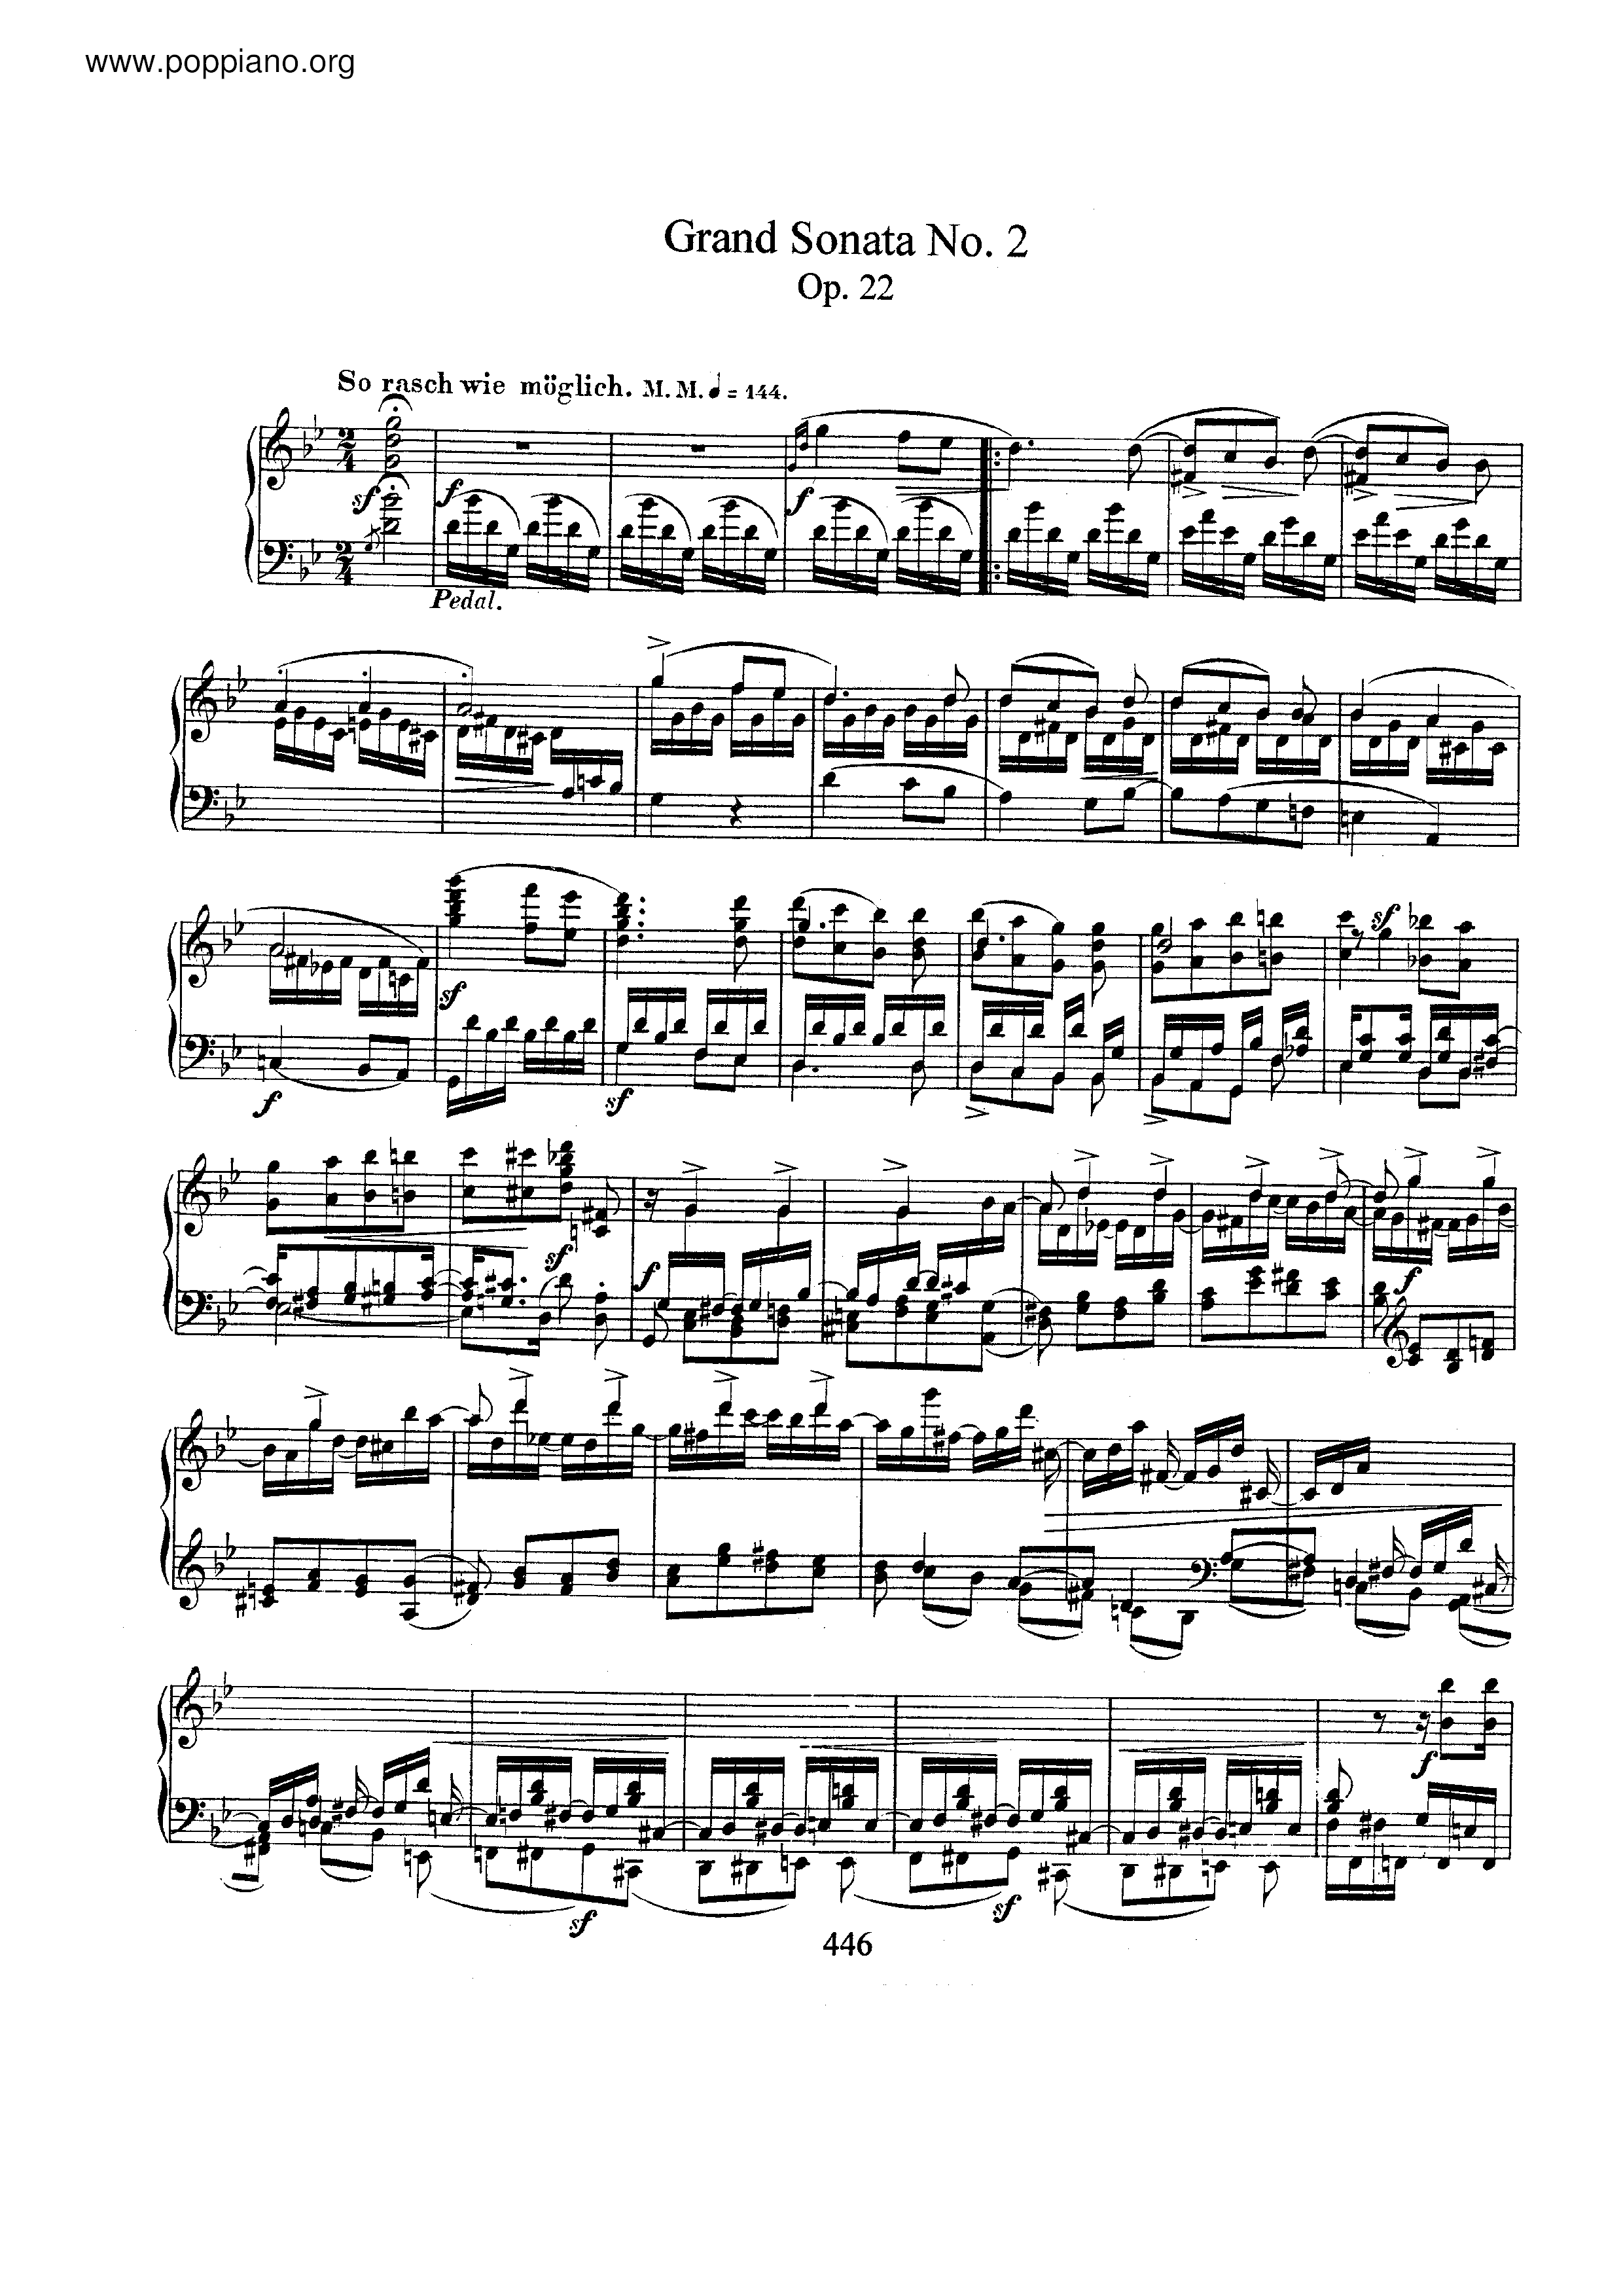 Grand Sonata No.2, Op.22 Score